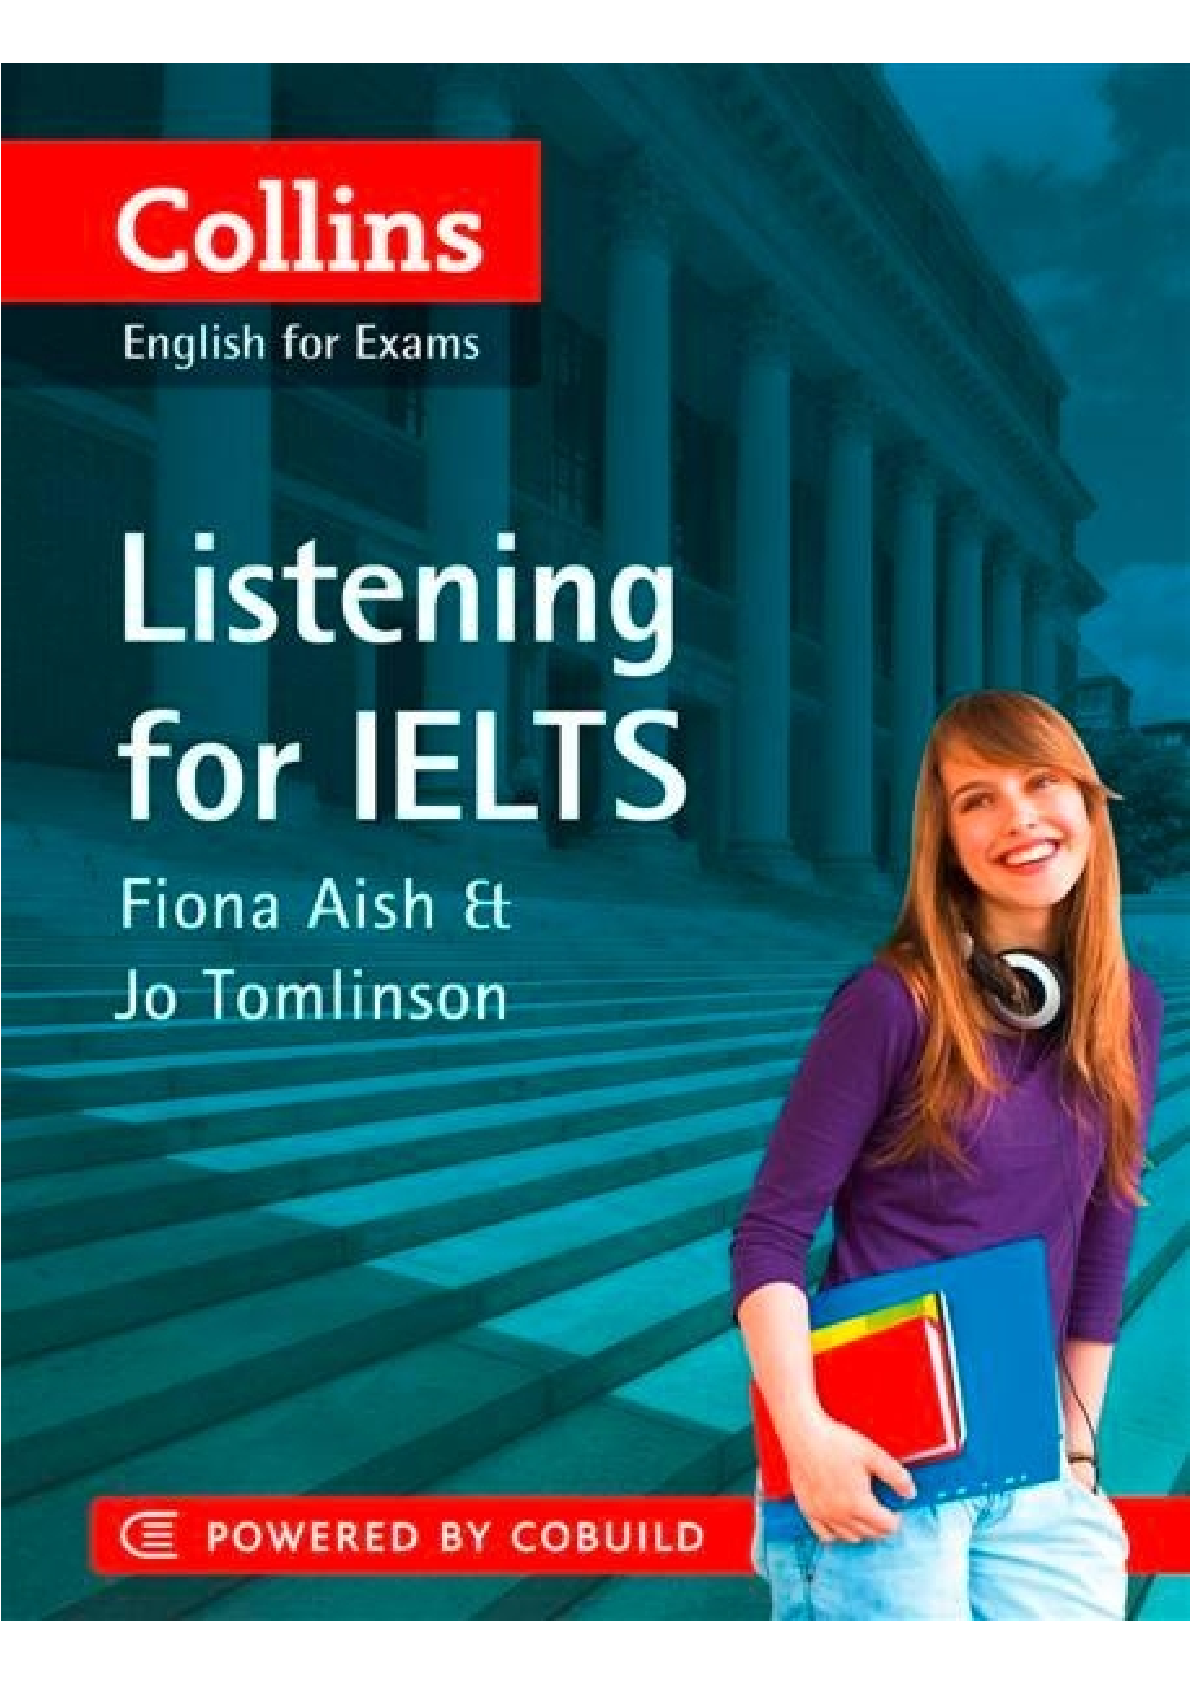 Sách Collins Listening for IELTS pdf | Xem online, tải PDF miễn phí (trang 1)